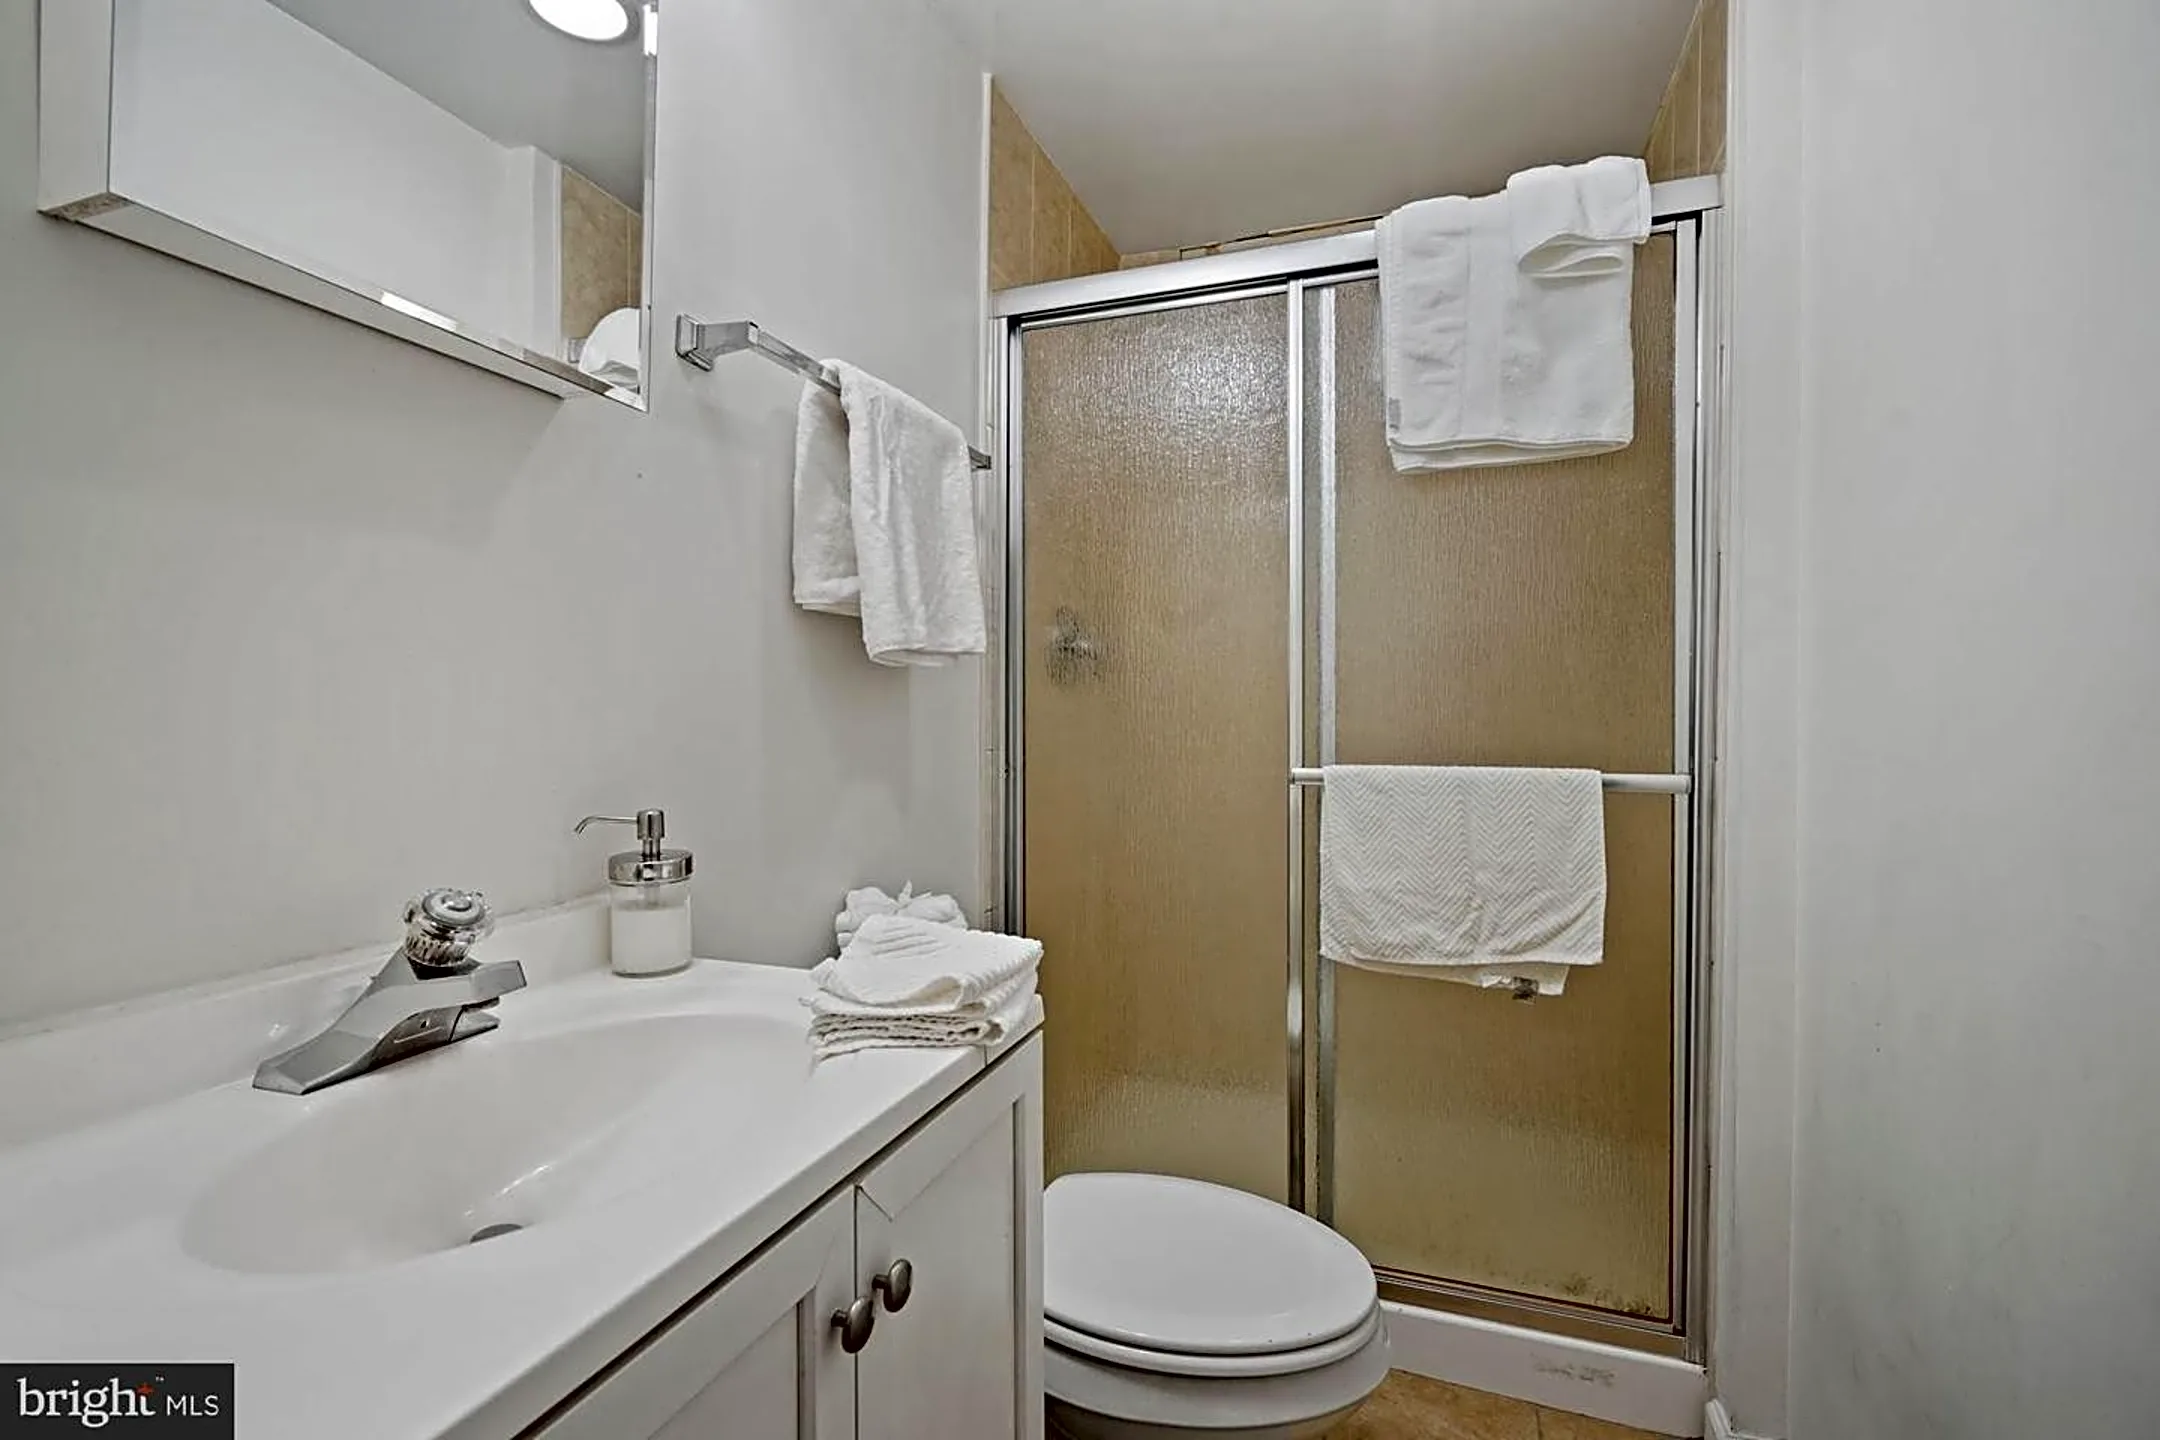 Bathroom - 3612 Whitehaven Pkwy NW - Washington, DC